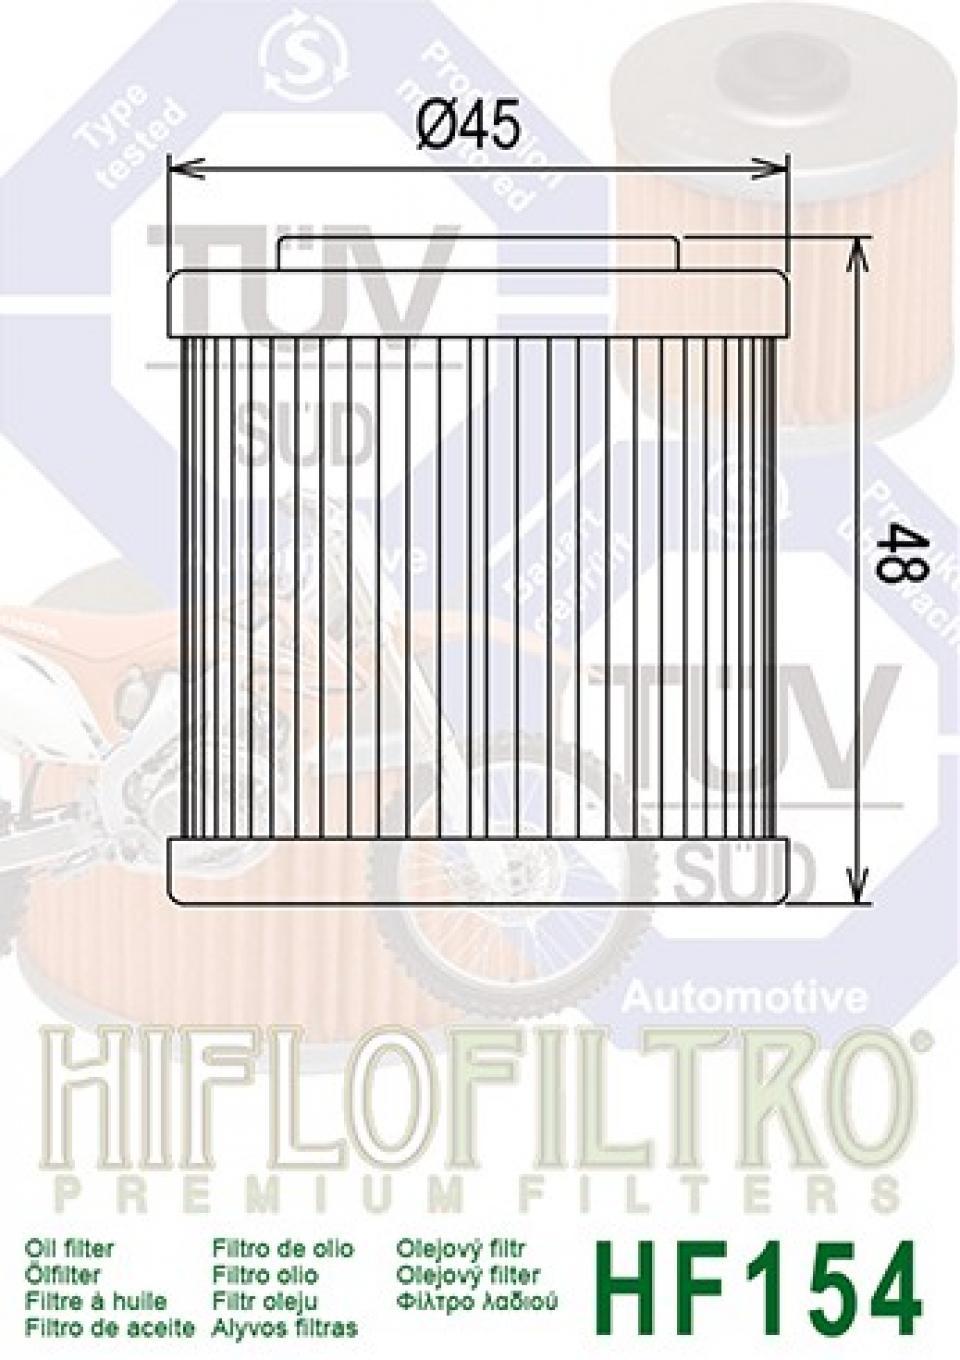 Filtre à huile Hiflo Filtro pour Moto Husqvarna 610 Te E 2002-2007 Neuf